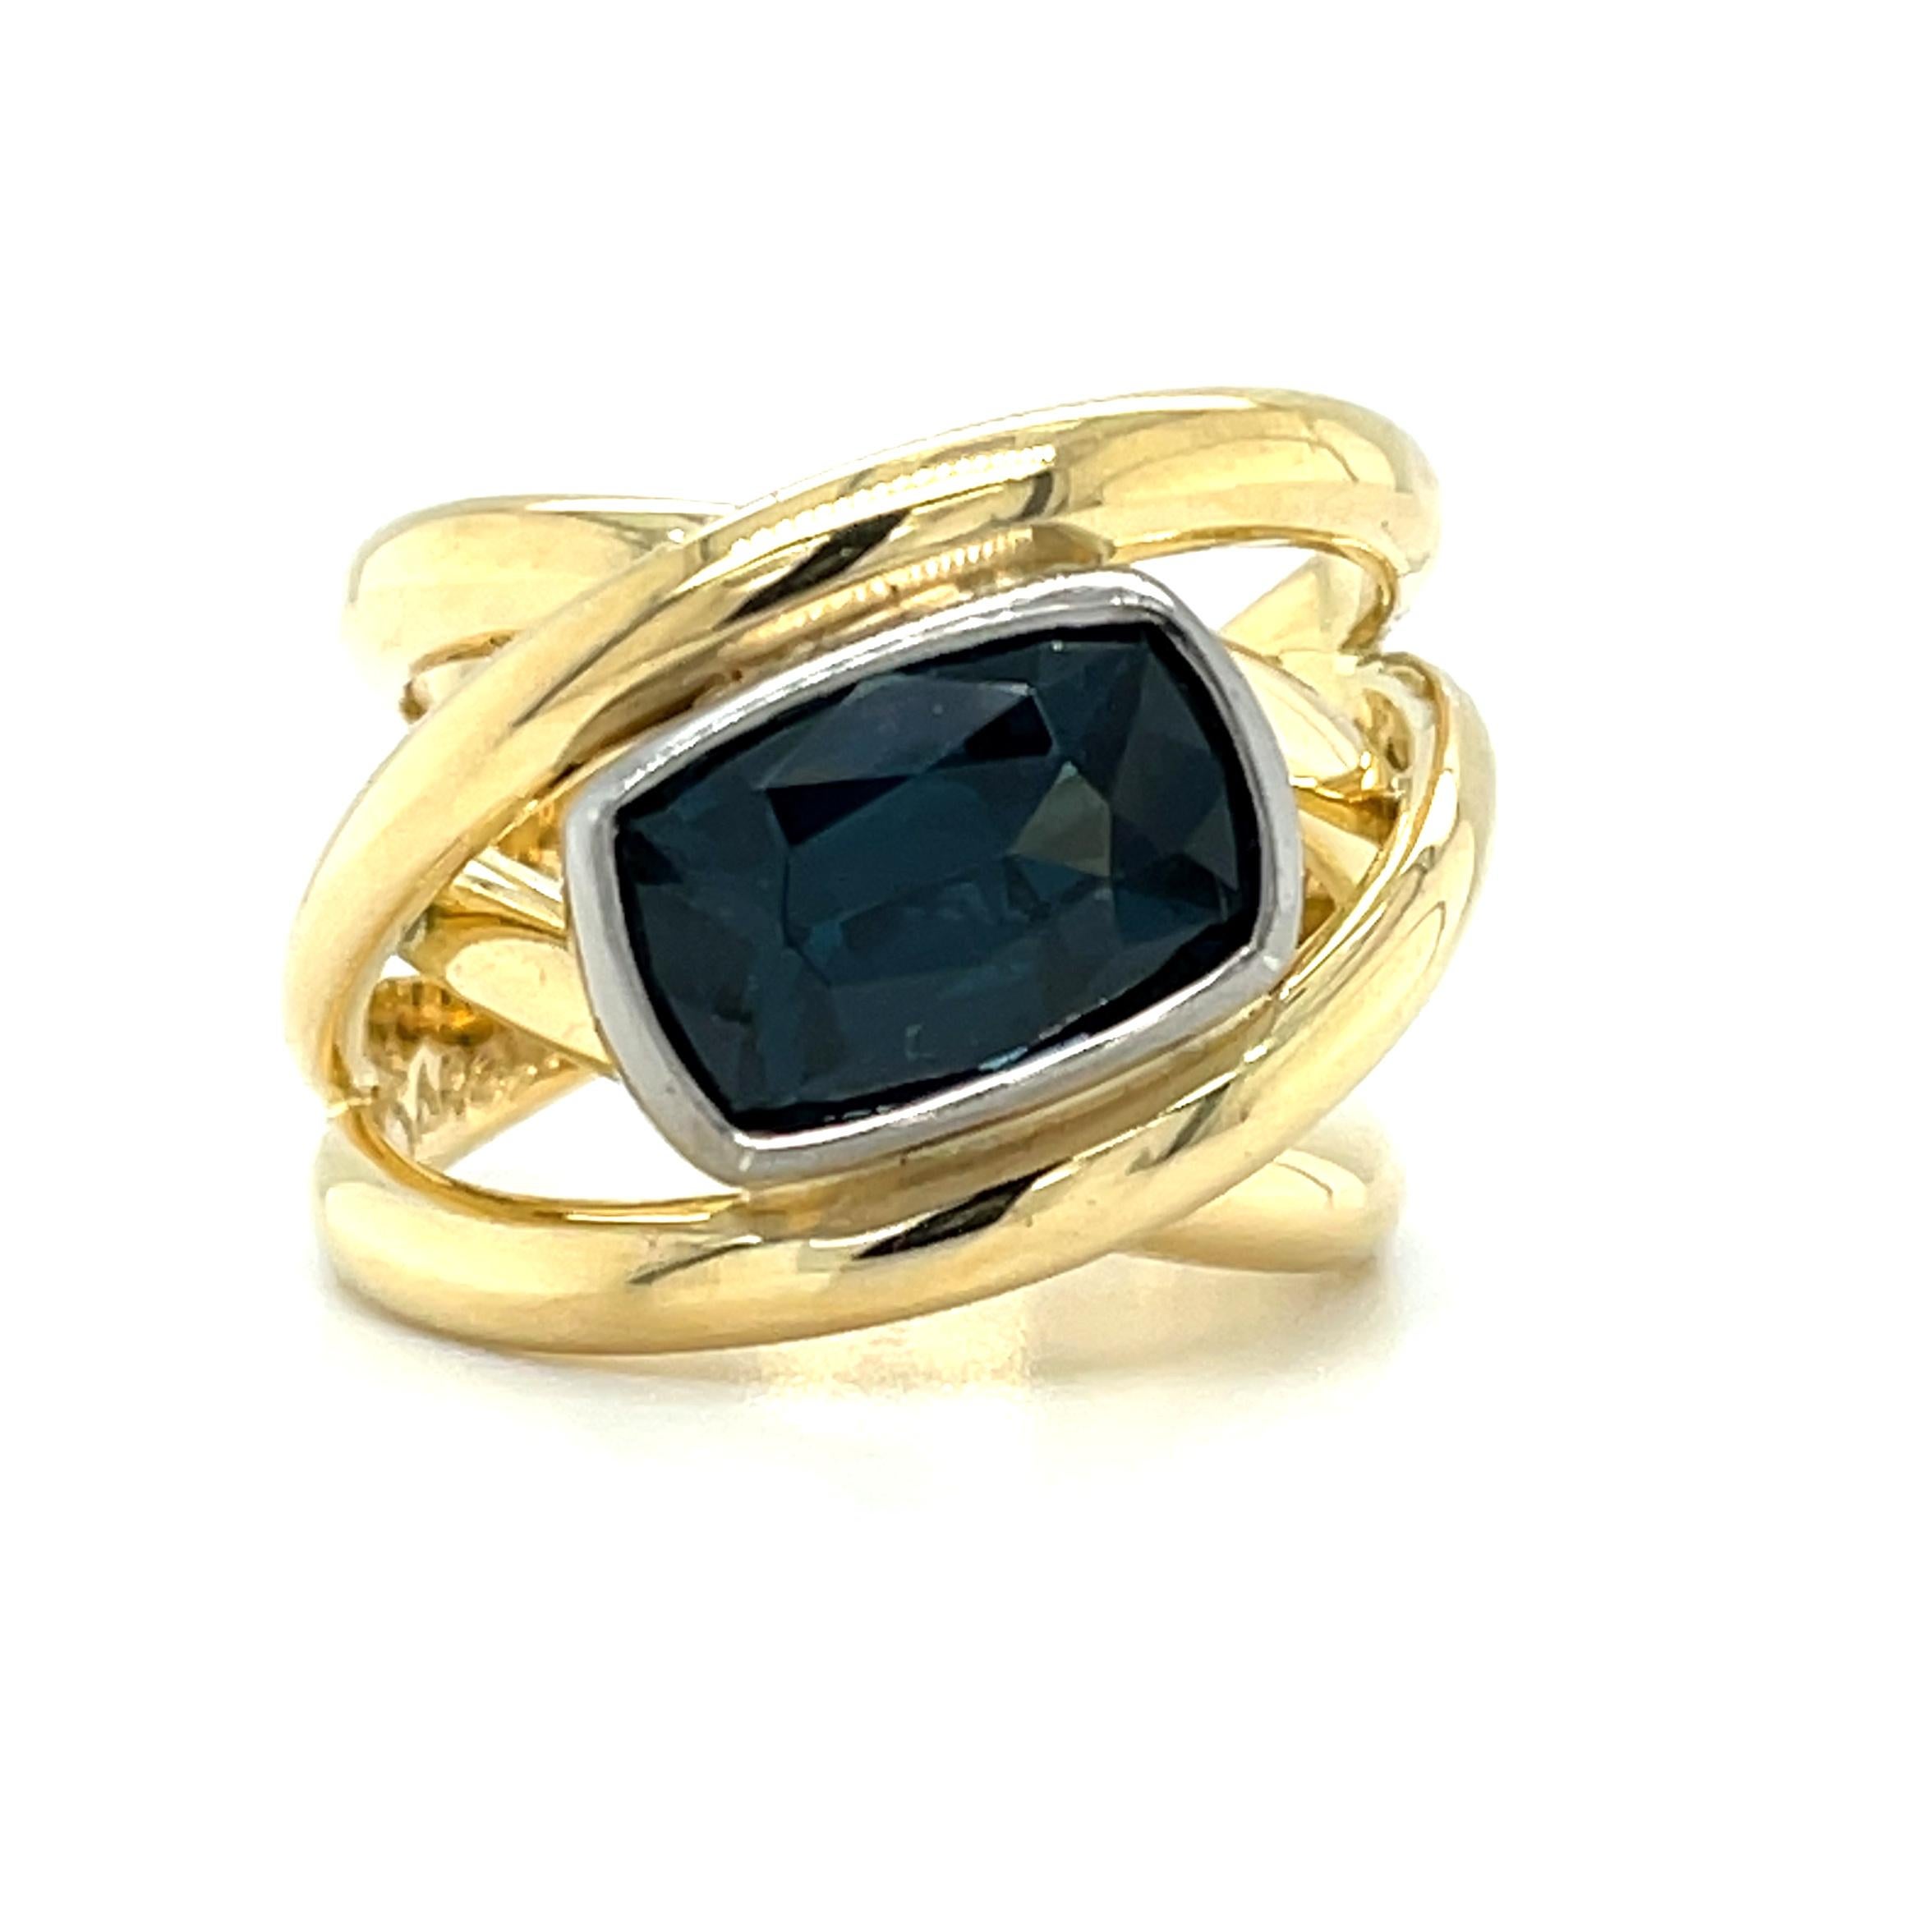 Dieser auffällige Ring enthält einen kissenförmigen blauen Spinell von 4,07 Karat mit einer wunderschönen, satten, marineblauen Farbe! Der schöne Edelstein ist auf einer horizontalen Diagonale in eine Lünette aus 18 Karat Weißgold gefasst.